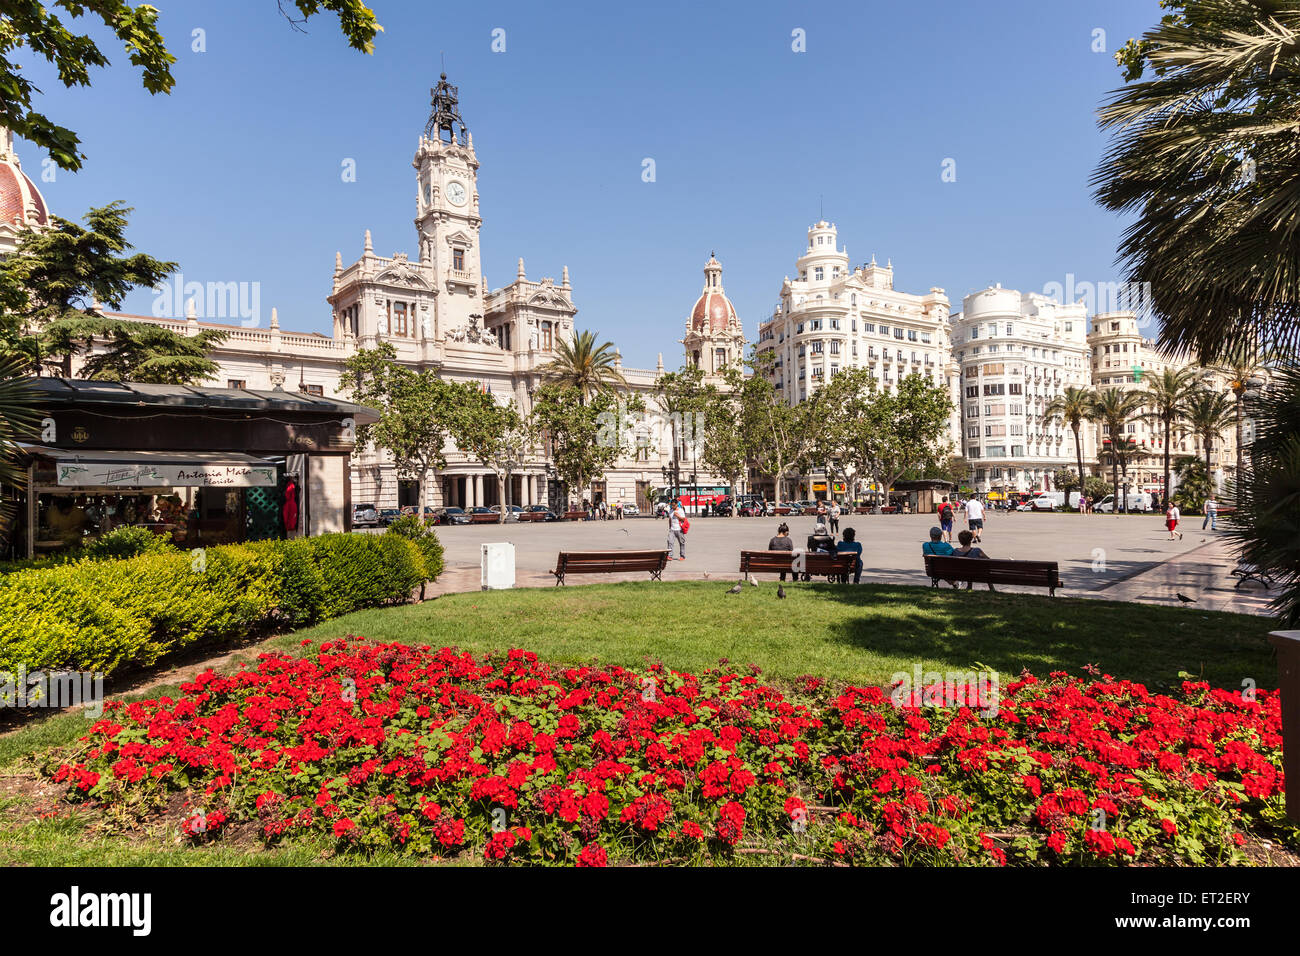 Las flores rojas en la Plaza del Ayuntamiento, Plaza de la ciudad de Valencia, España Foto de stock